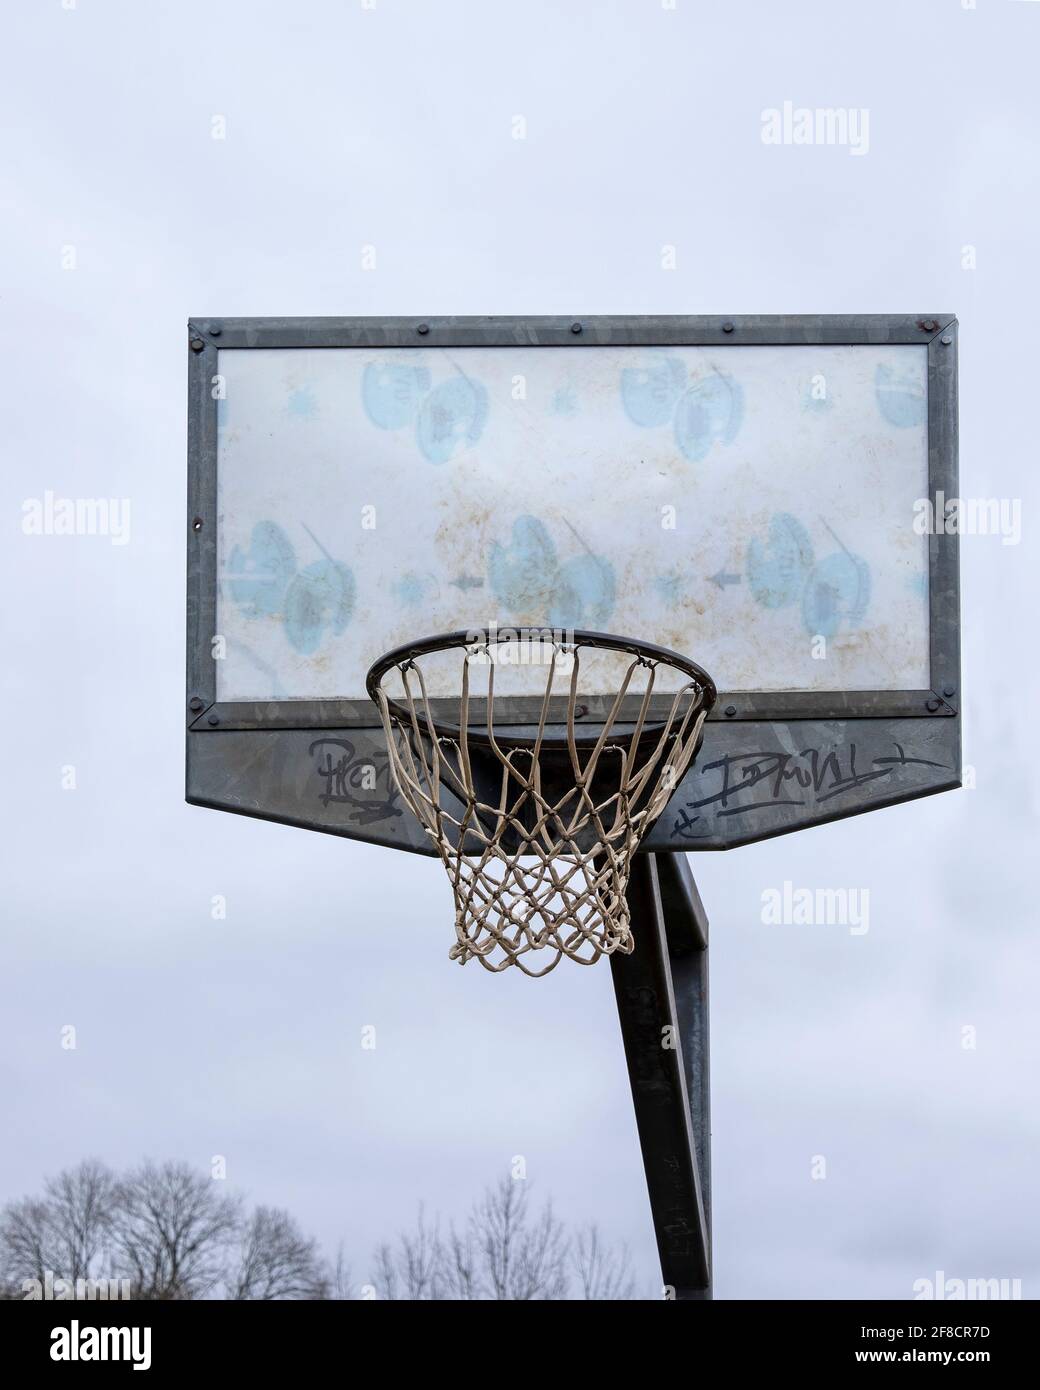 Basketball net on high pole against a grey sky. Stock Photo